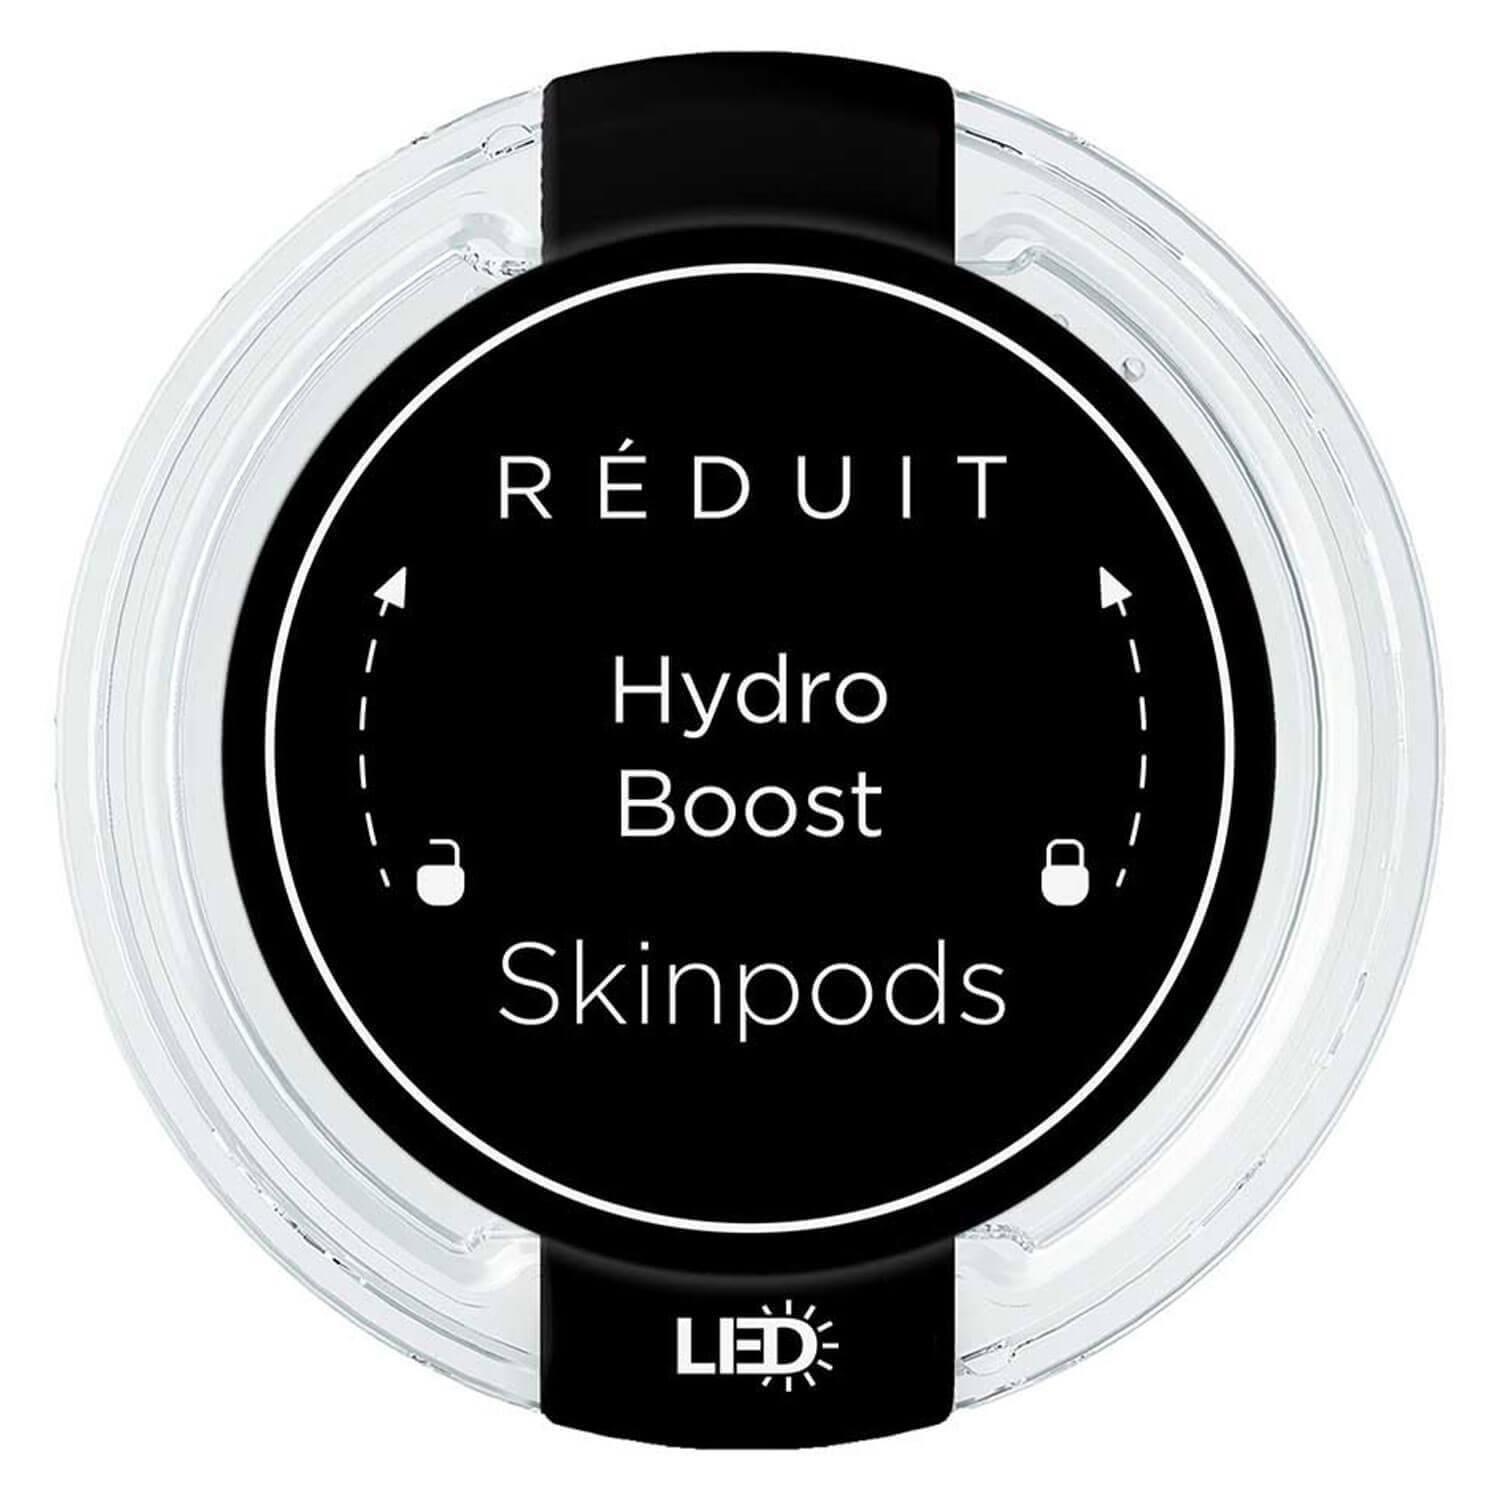 RÉDUIT - Hydro Boost Skinpods LED